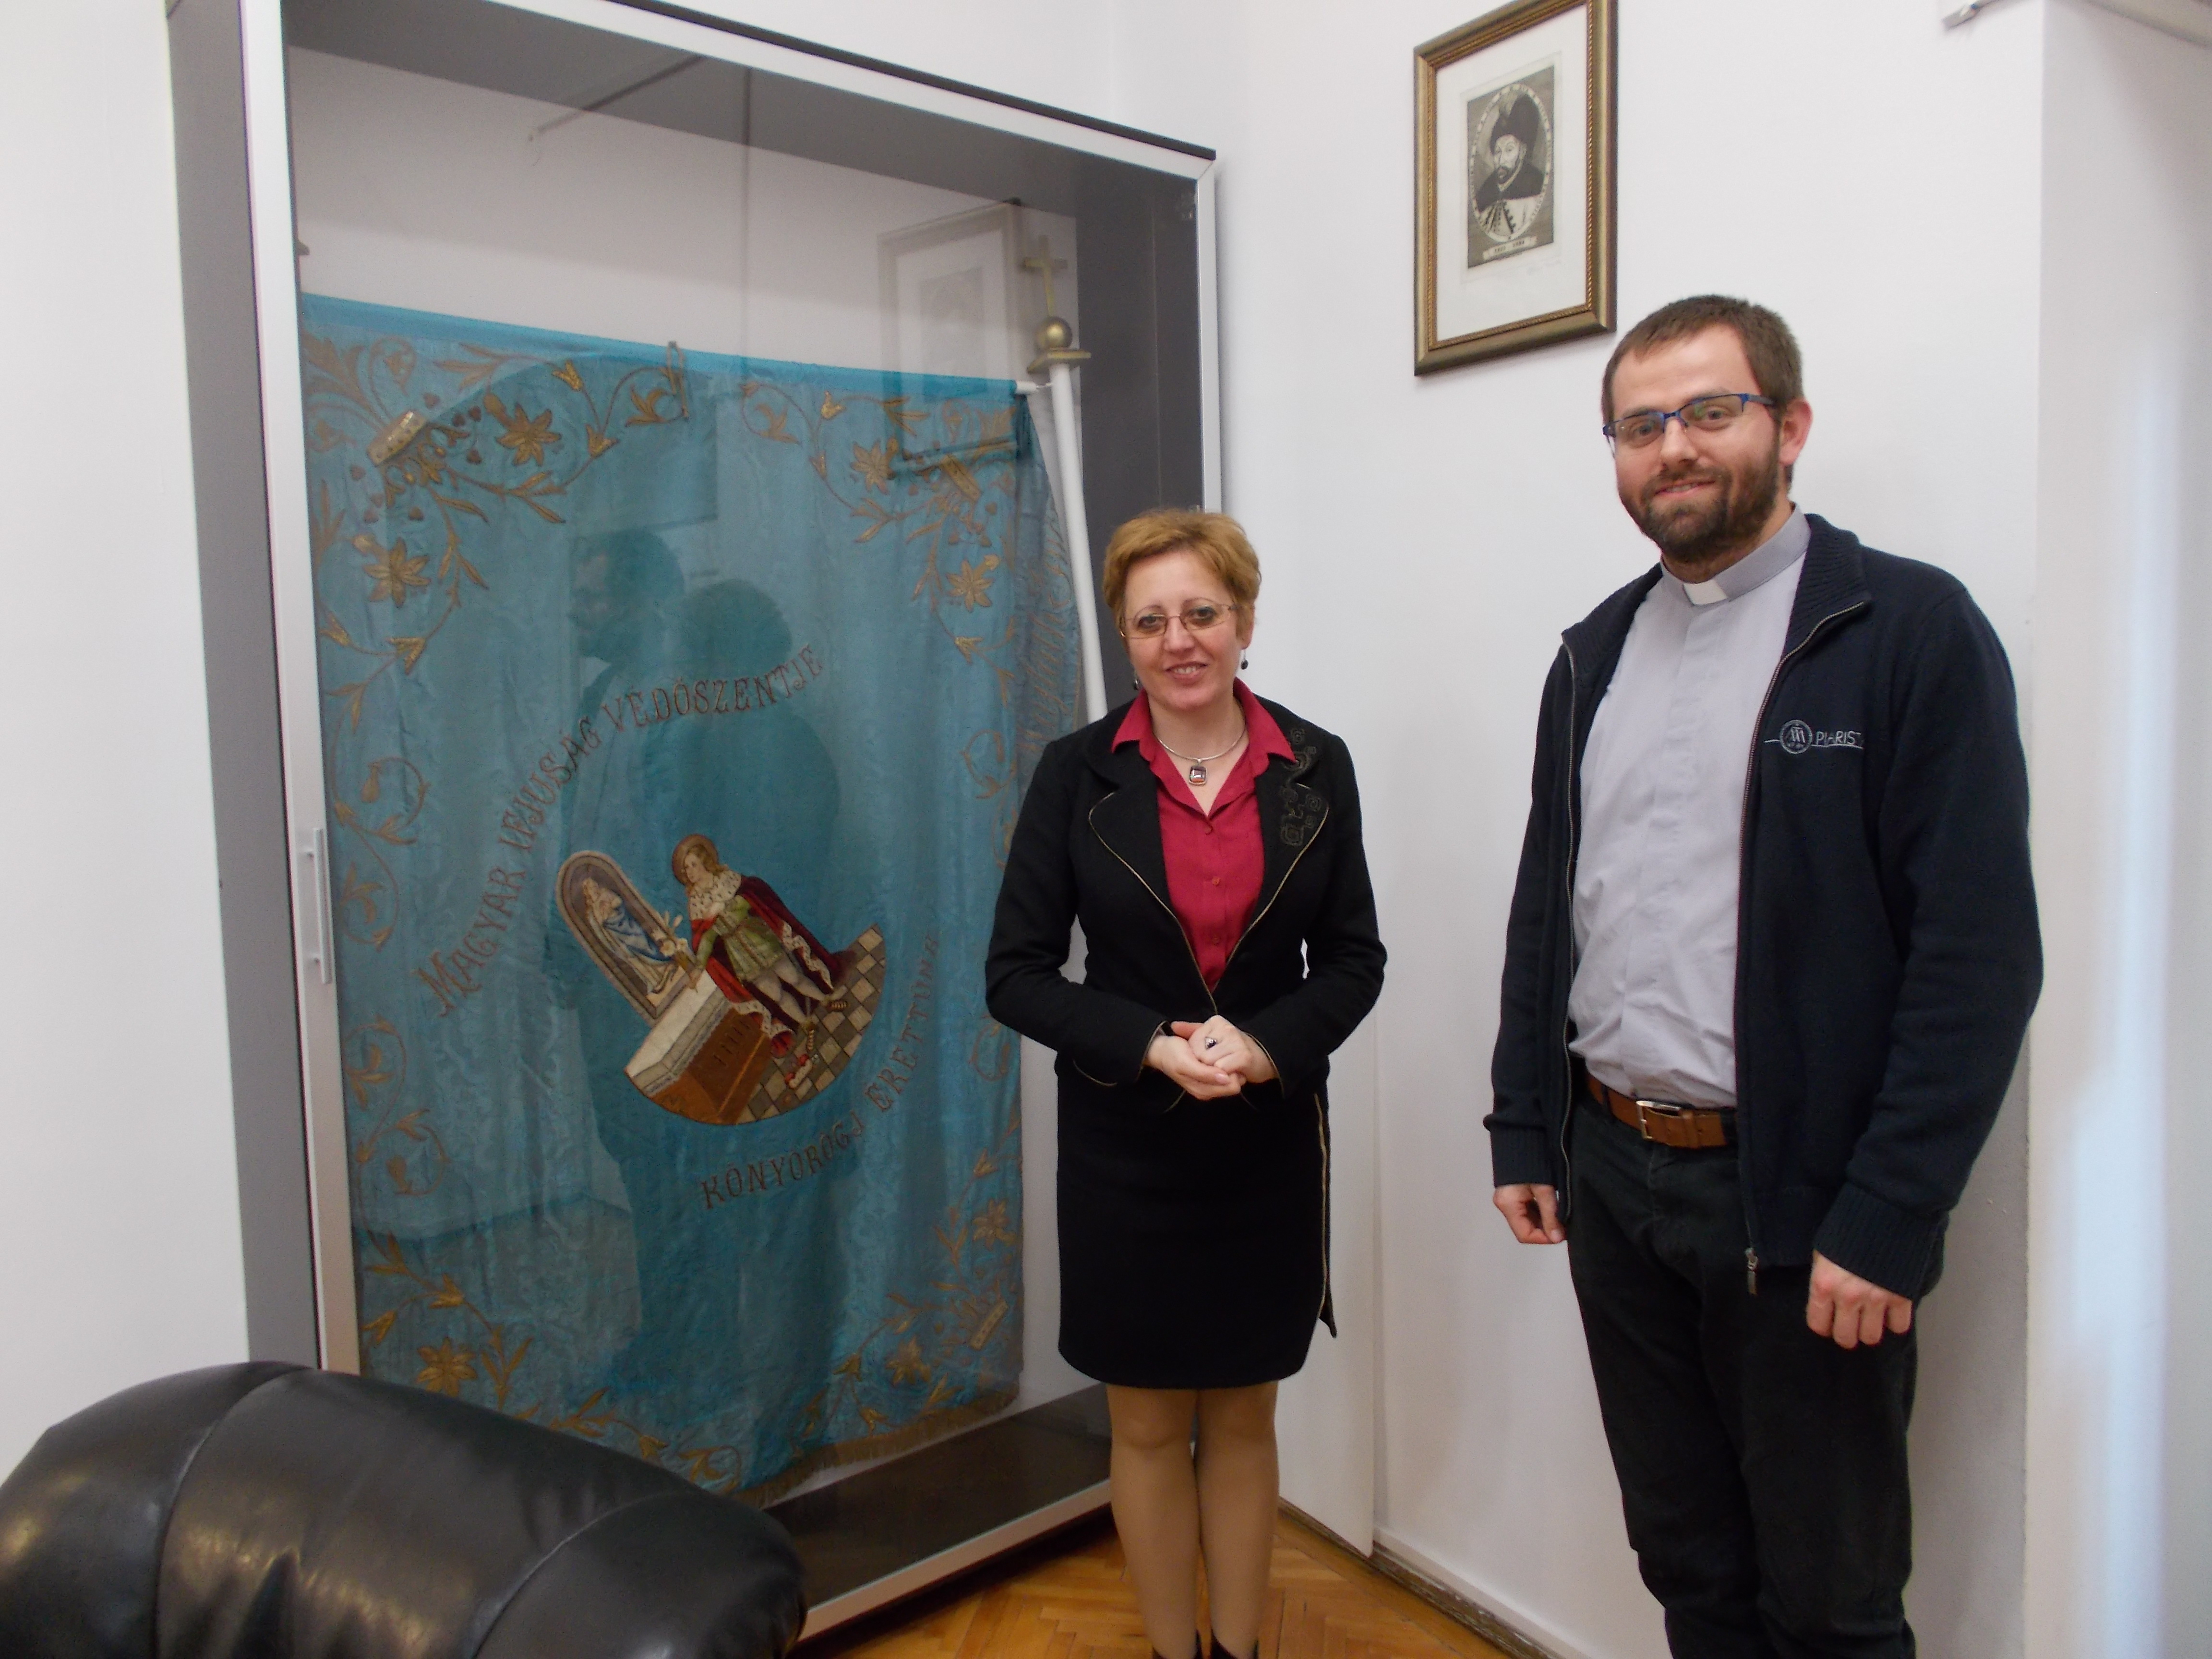 Kolozsvárra látogatott a piarista rendtartomány új felelőse